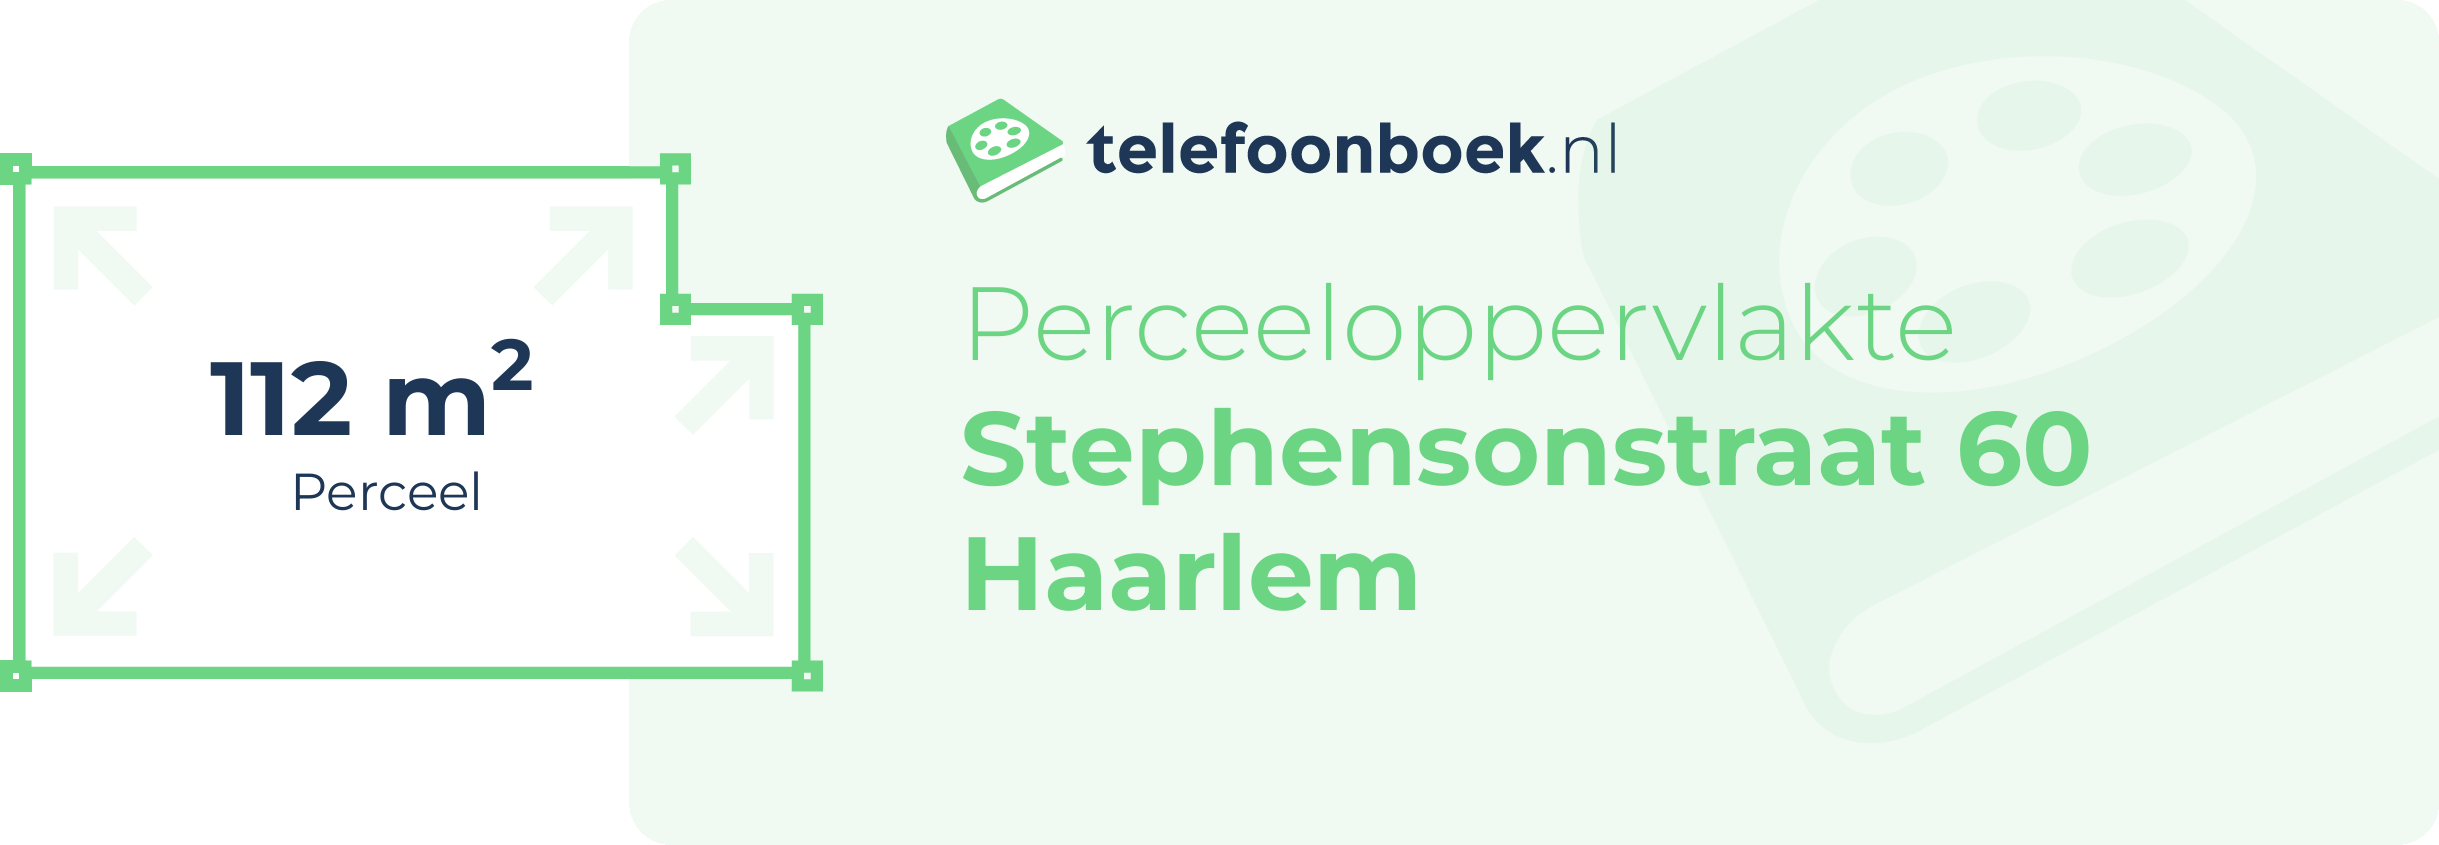 Perceeloppervlakte Stephensonstraat 60 Haarlem